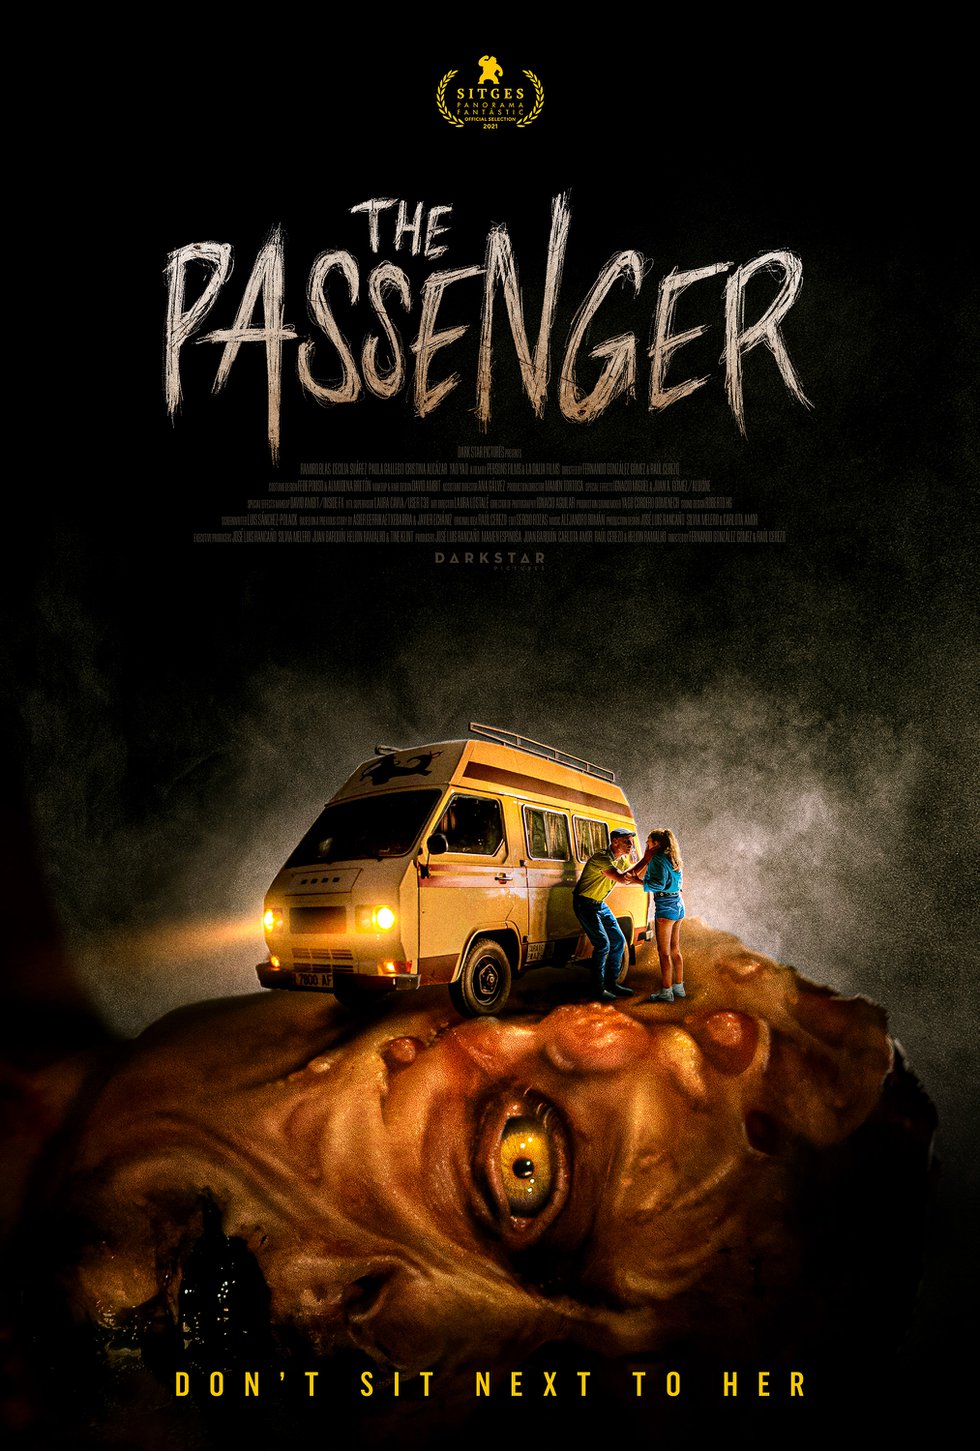 The Passenger Horror Poster.jpg